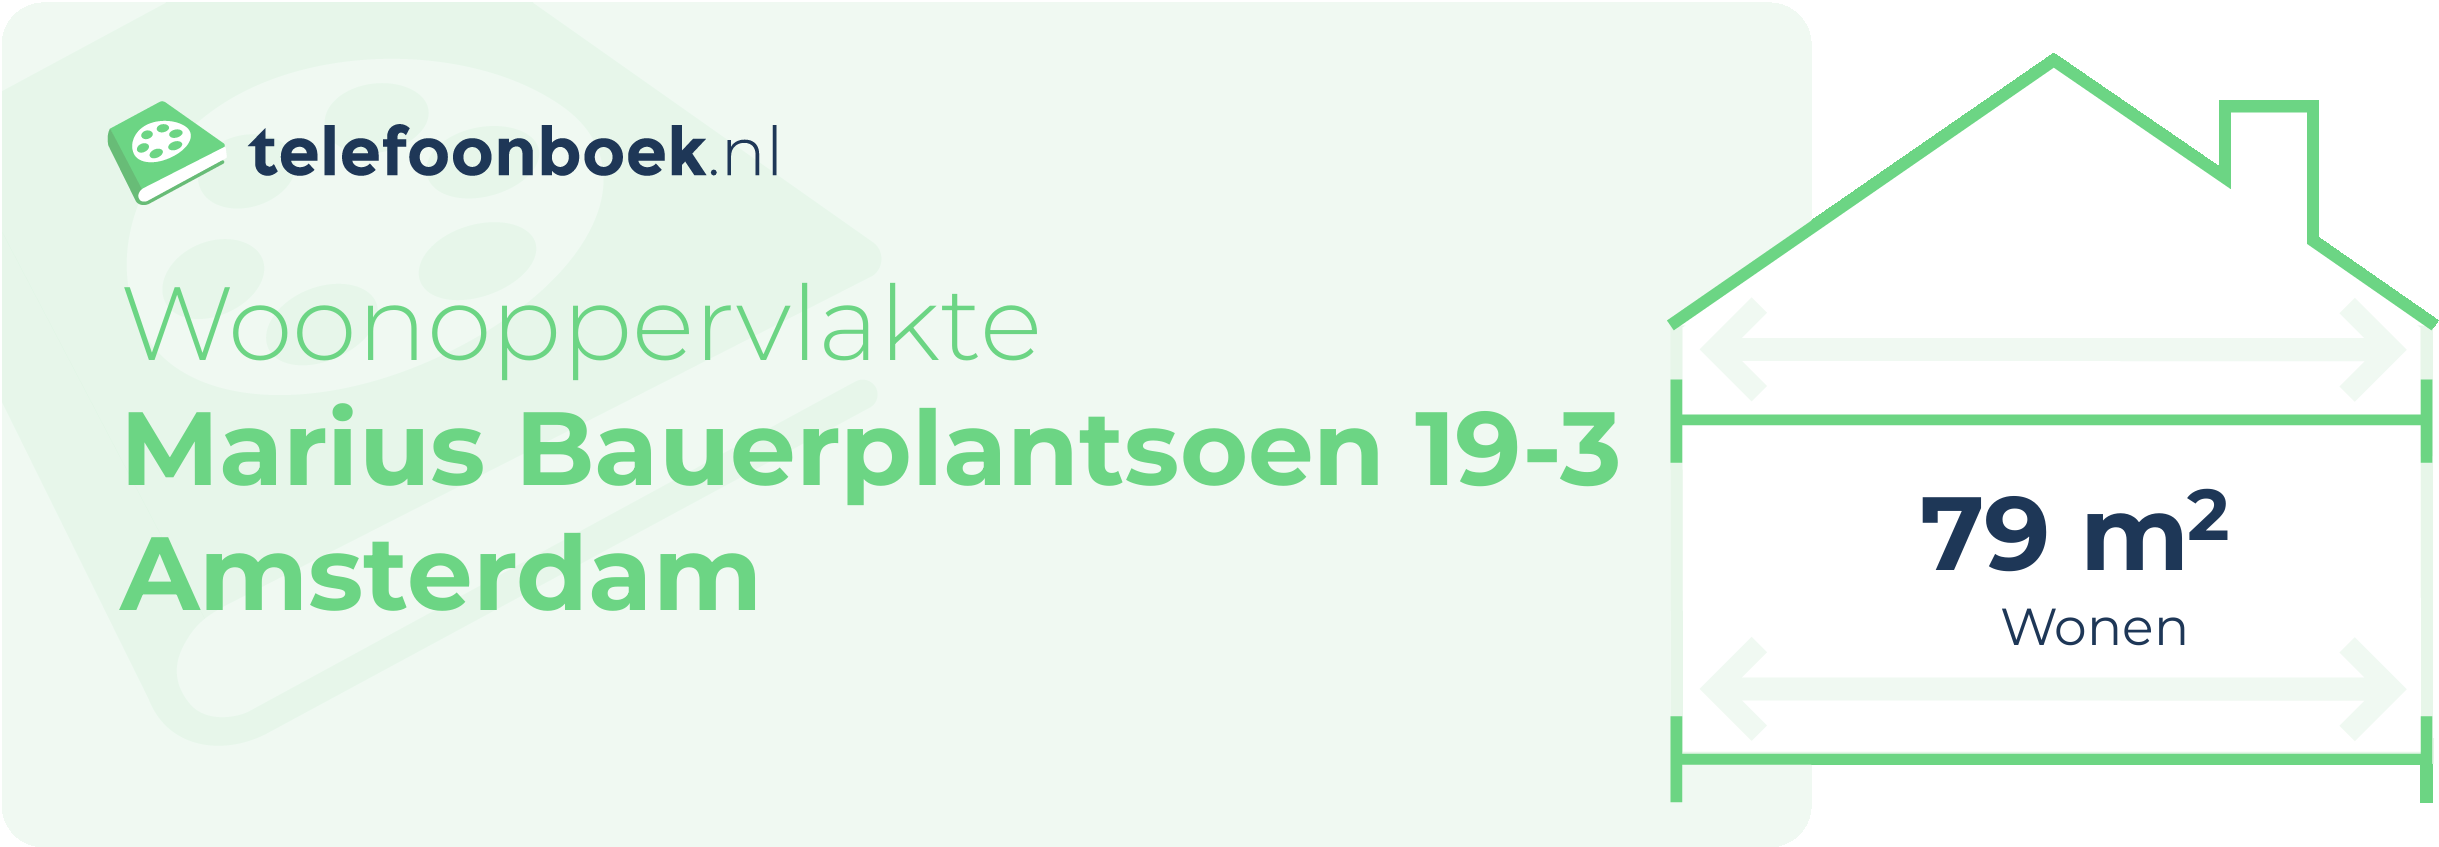 Woonoppervlakte Marius Bauerplantsoen 19-3 Amsterdam